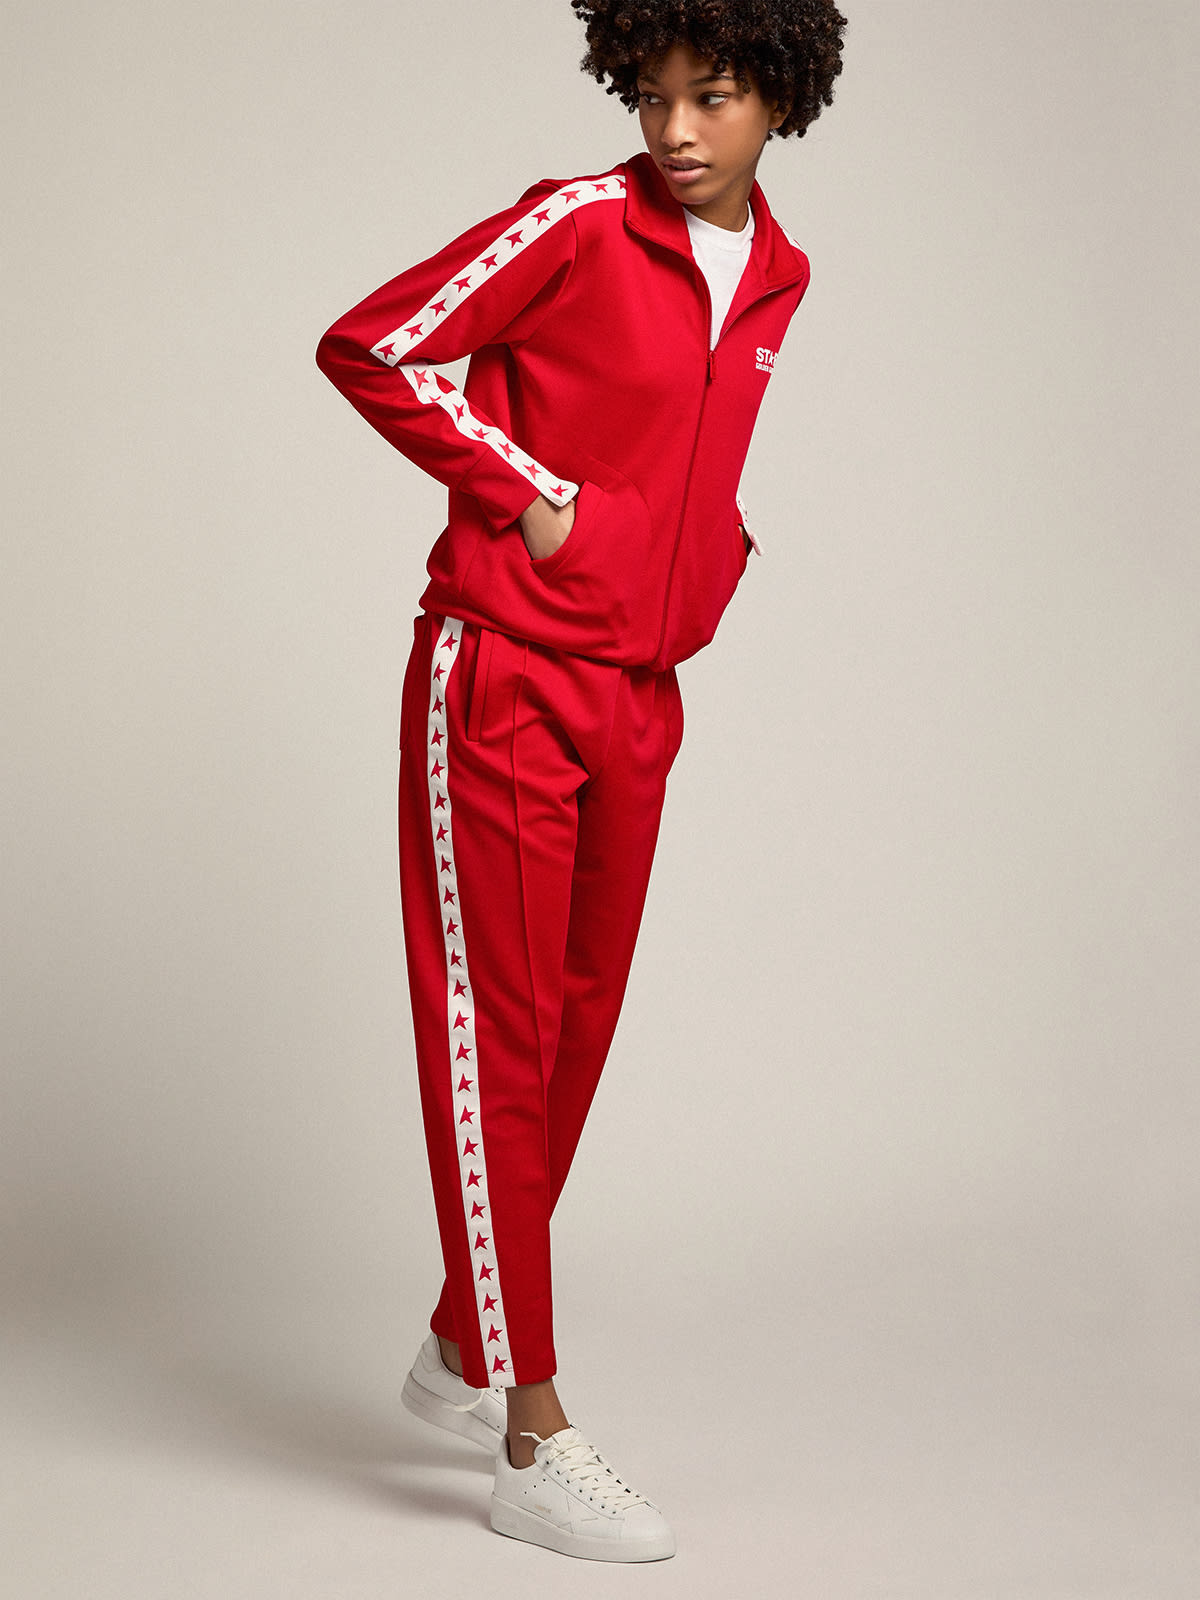 Golden Goose - Pantalone jogging da donna di colore rosso con stelle rosse sui lati in 